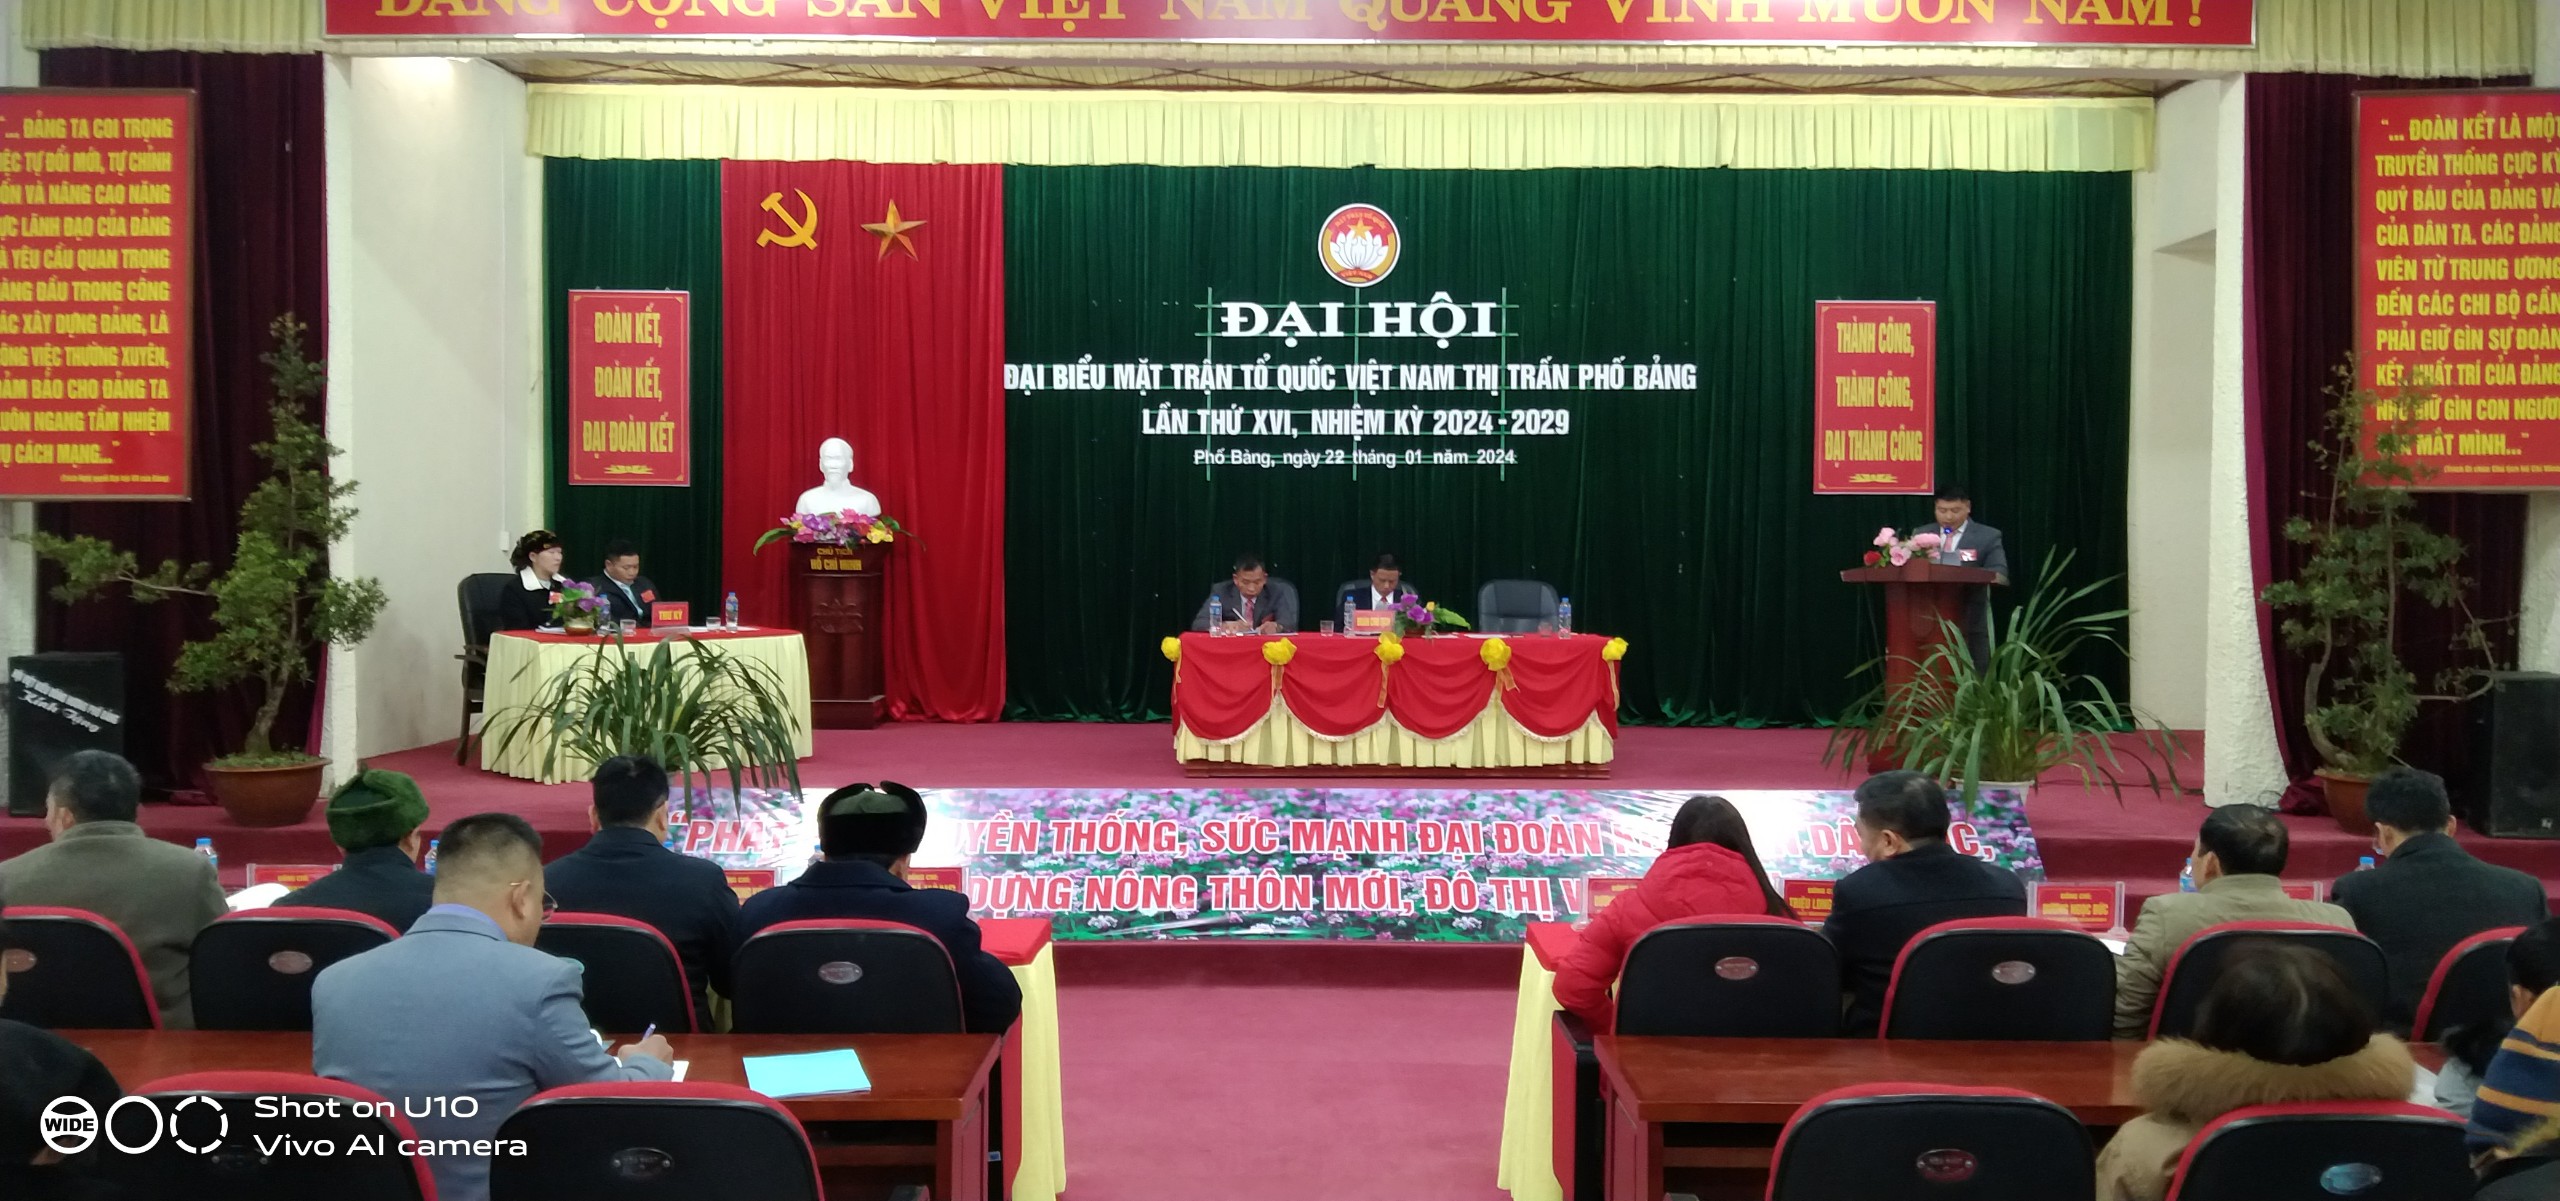 Đại hội điểm Mặt trận Tổ quốc Việt Nam thị trấn Phố Bảng lần thứ XVI, nhiệm kỳ 2024-2029